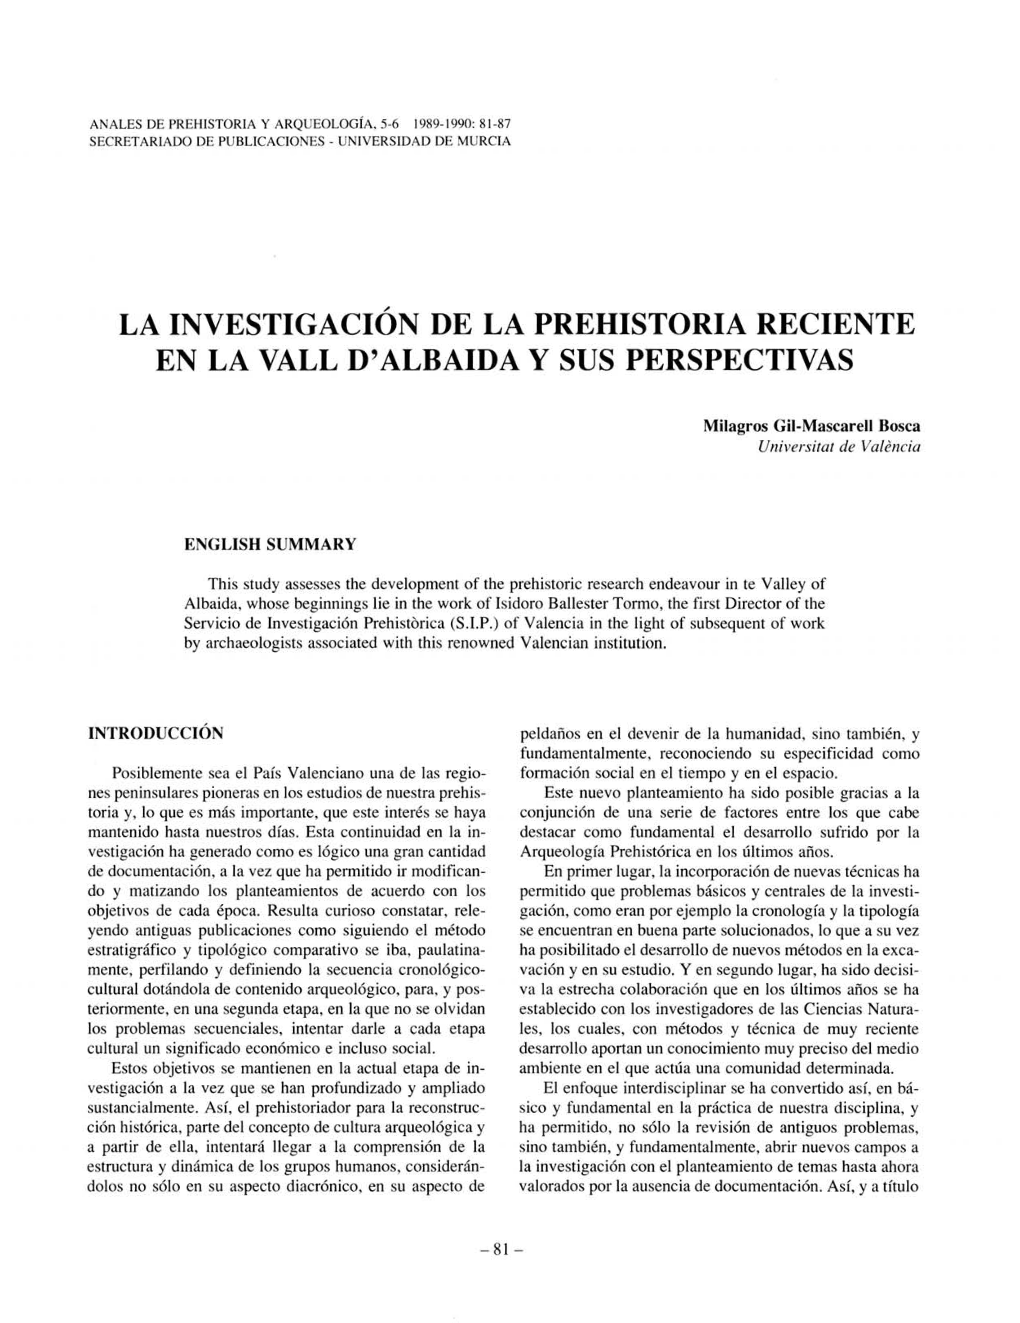 La Investigaci~N De La Prehistoria Reciente En La